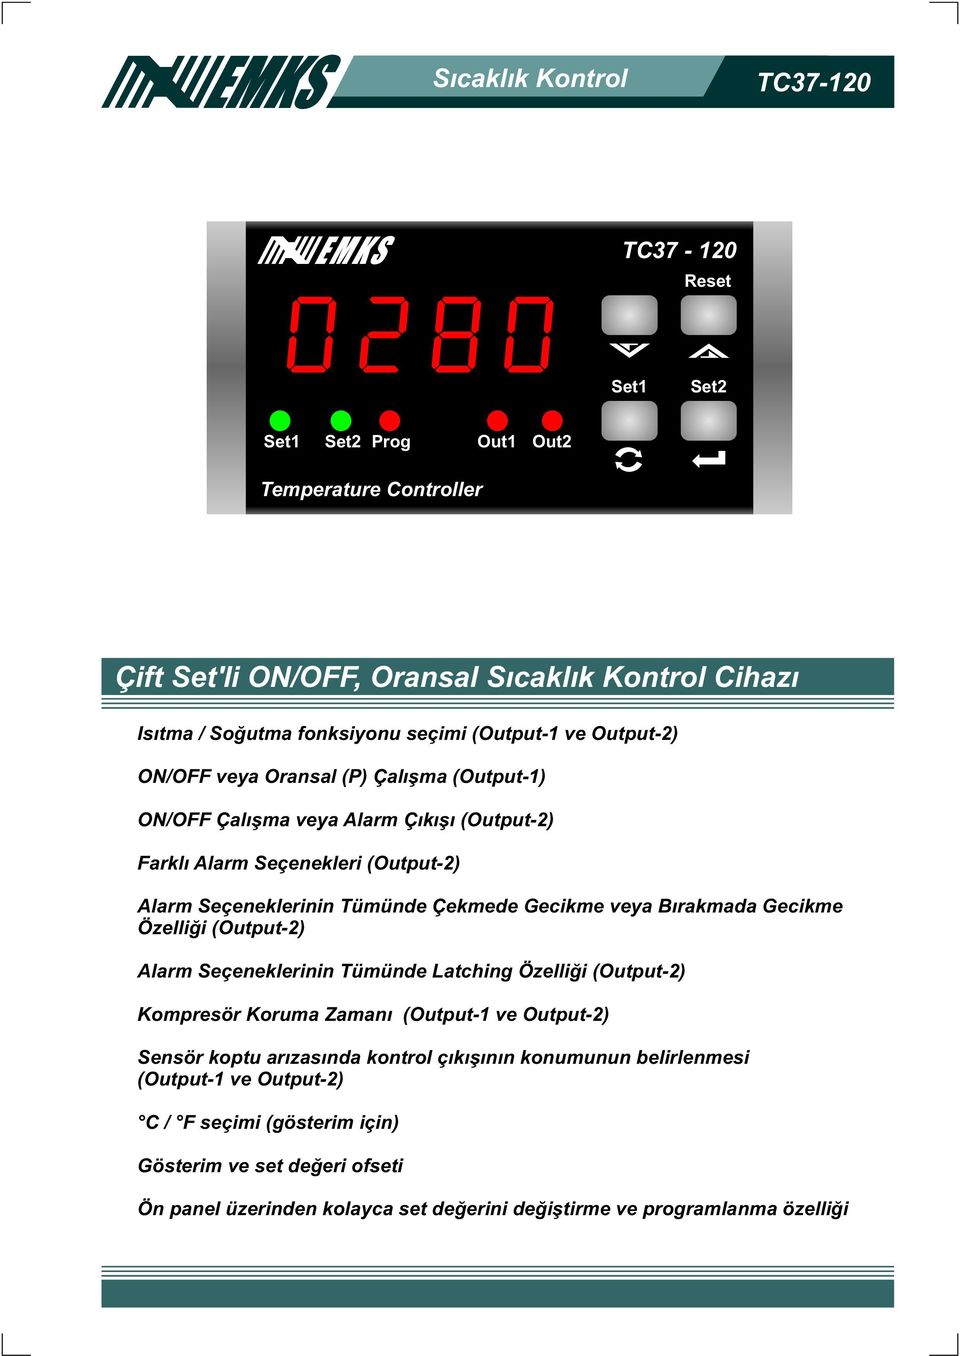 Býrakmada Gecikme Özelliði (Output-2) Alarm Seçeneklerinin Tümünde Latching Özelliði (Output-2) Kompresör Koruma Zamaný (Output-1 ve Output-2) Sensör koptu arýzasýnda kontrol